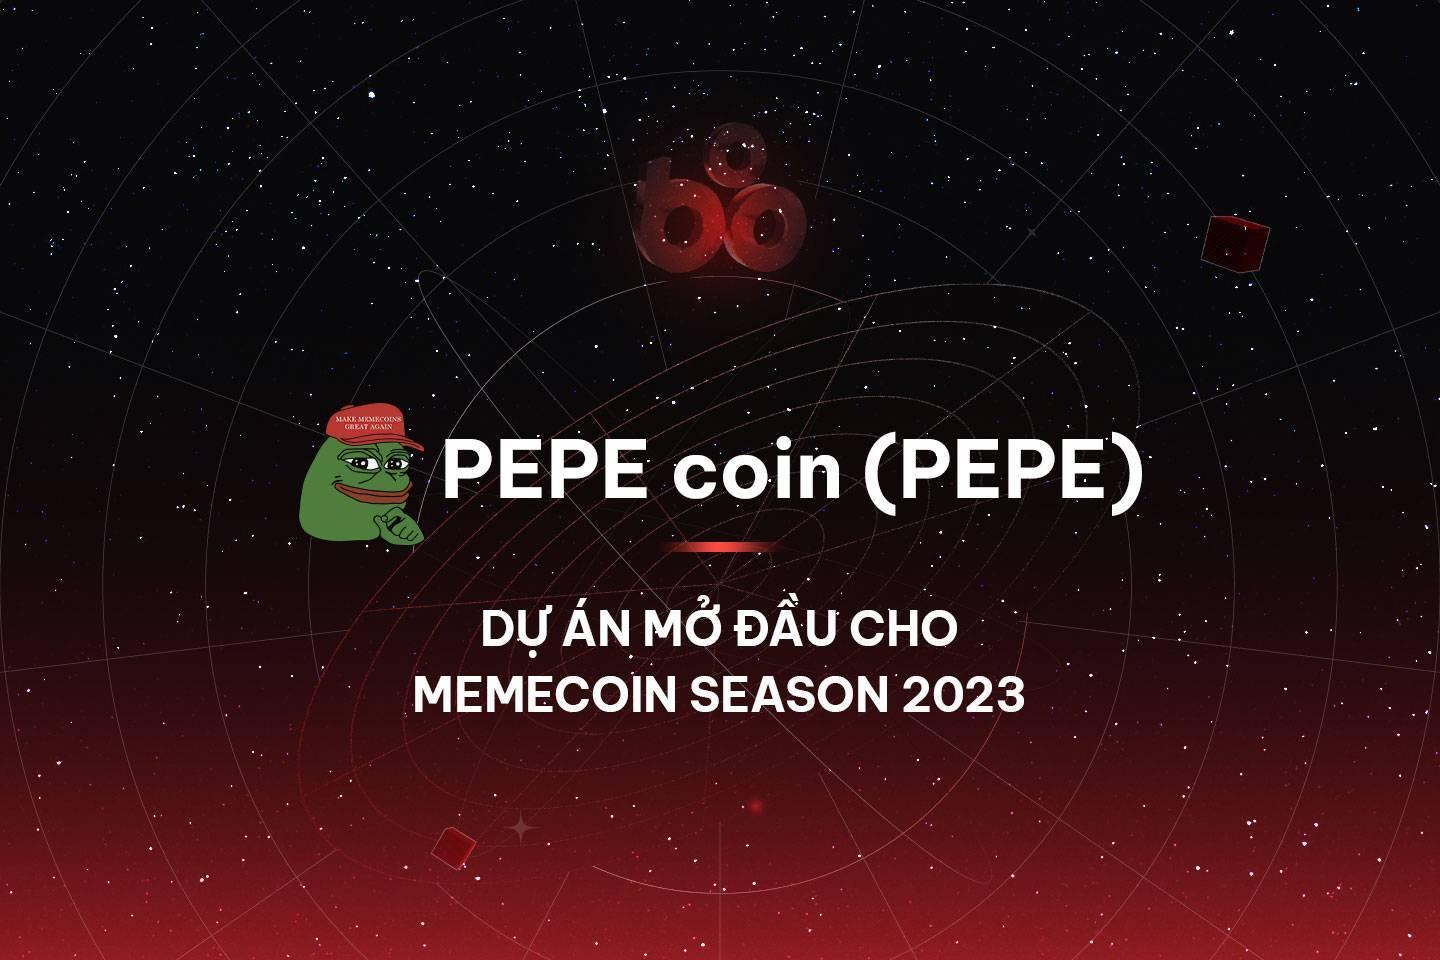 pepe-coin-pepe-du-an-mo-dau-cho-memecoin-season-2023